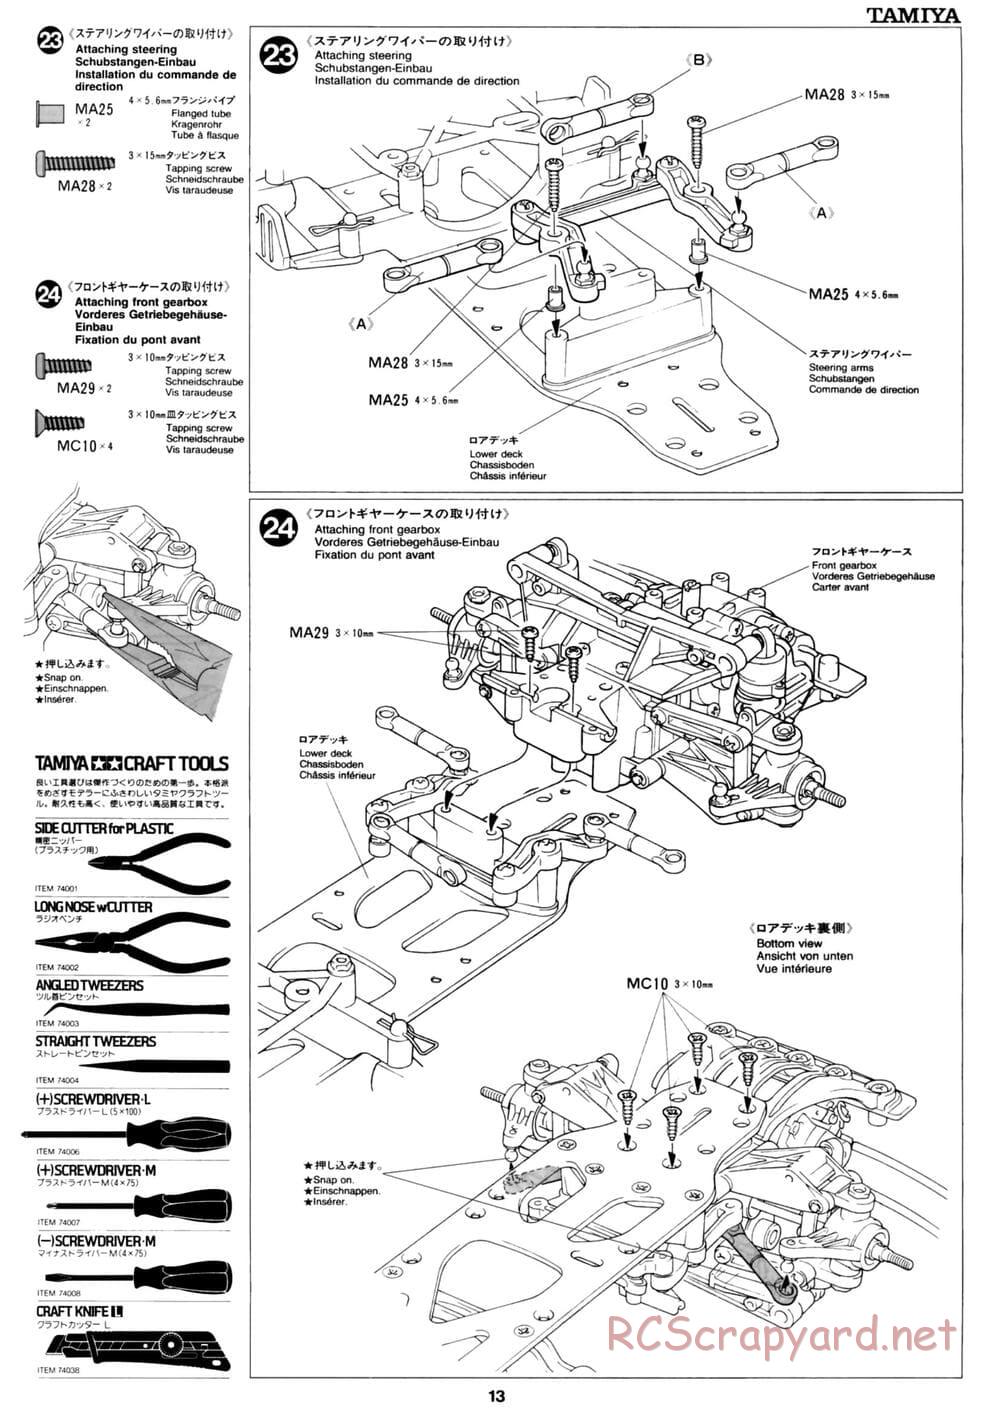 Tamiya - David Jun TA03F Pro Chassis - Manual - Page 13